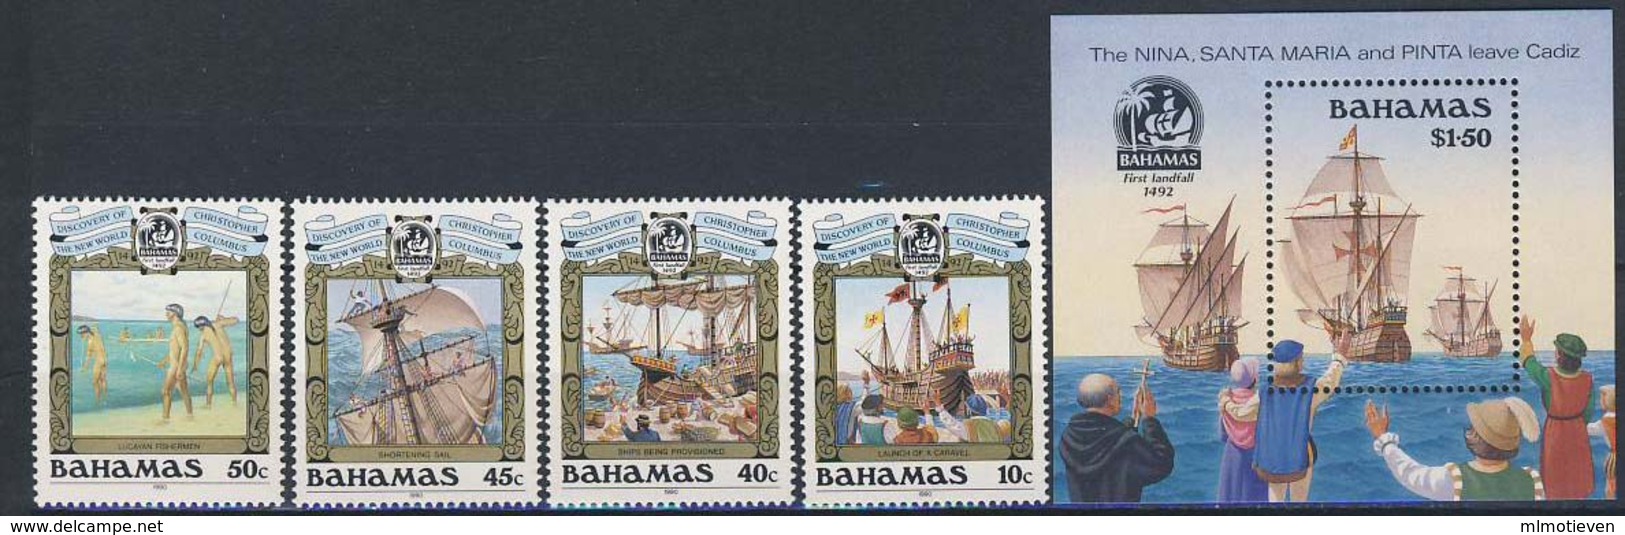 MVS-BK1-164 MINT ¤ BAHAMAS 1990 KOMPL. SET ¤ VOILIERS - ZEILSCHEPEN - SAILING SHIPS OVER THE WORLD - Marittimi